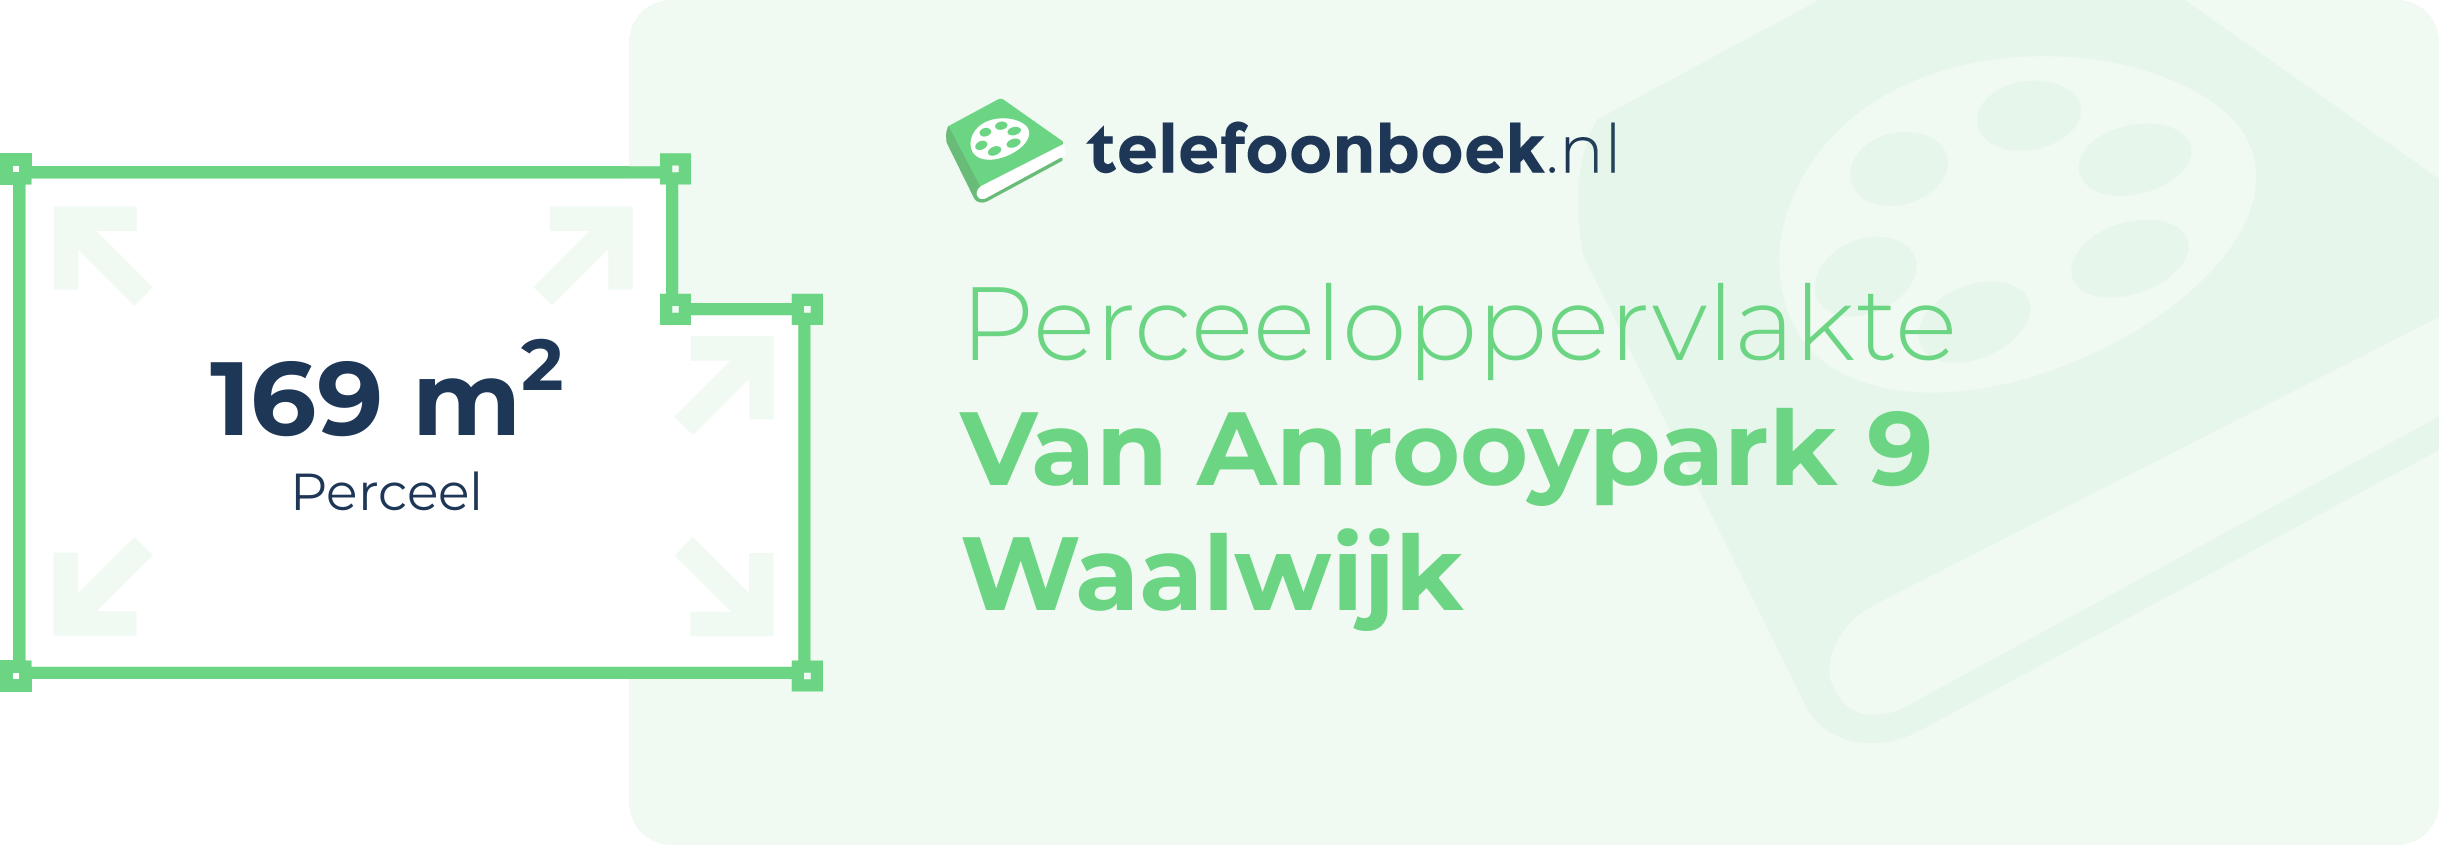 Perceeloppervlakte Van Anrooypark 9 Waalwijk